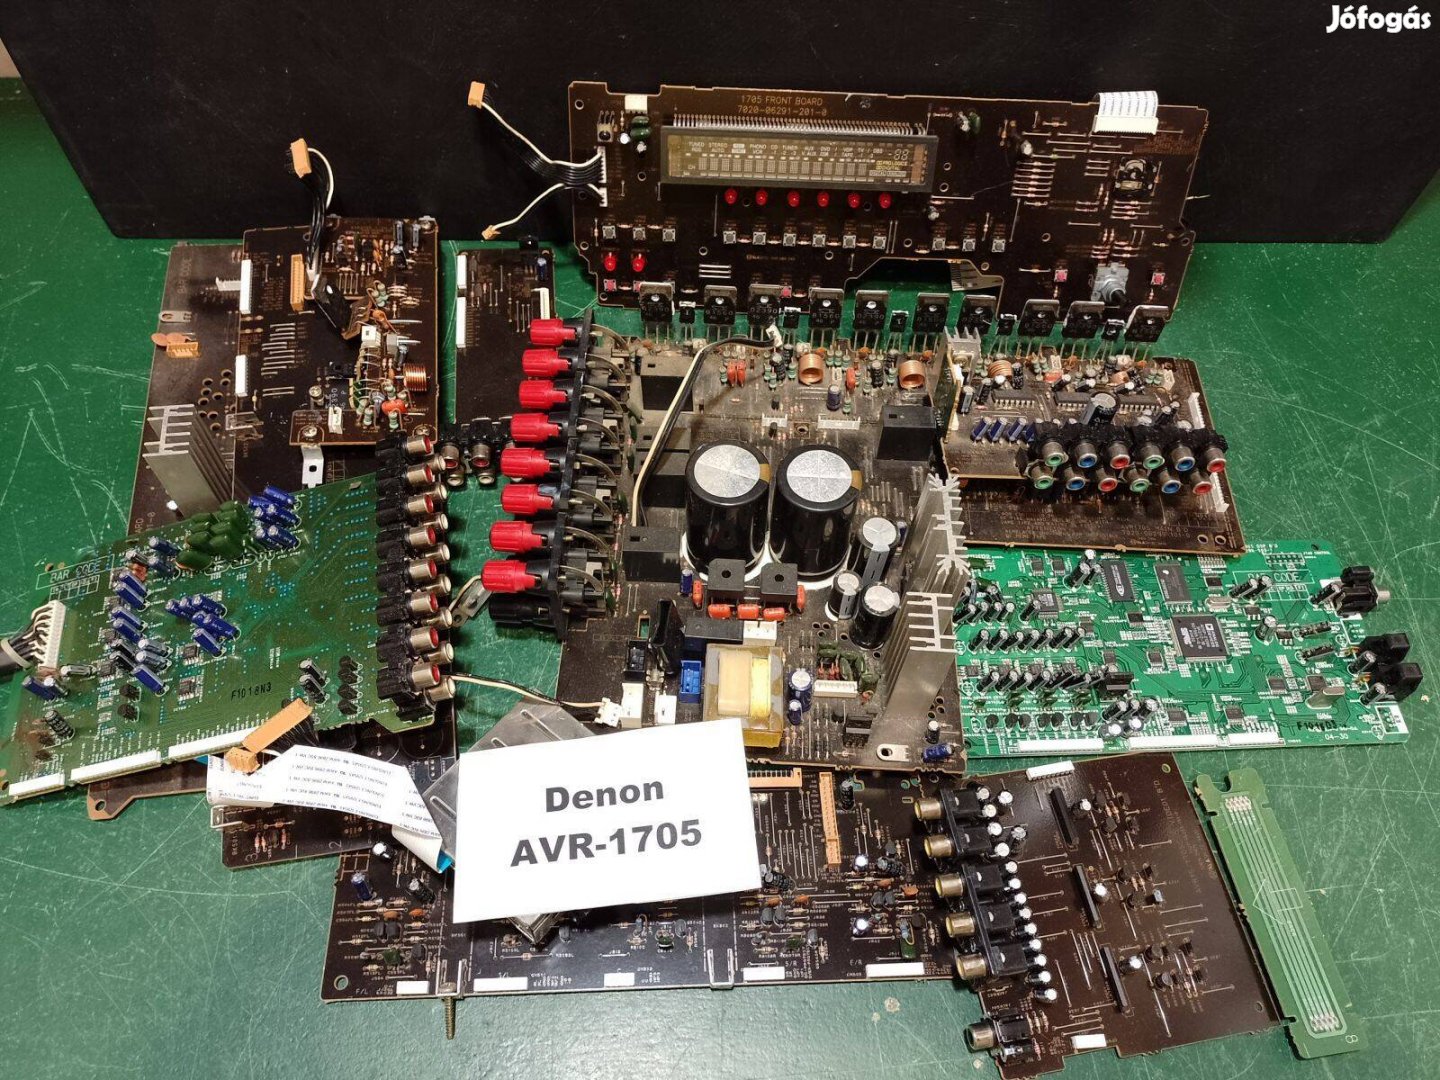 Denon AVR-1705 erősítő komplett belső elektronika / receiver alkatrész